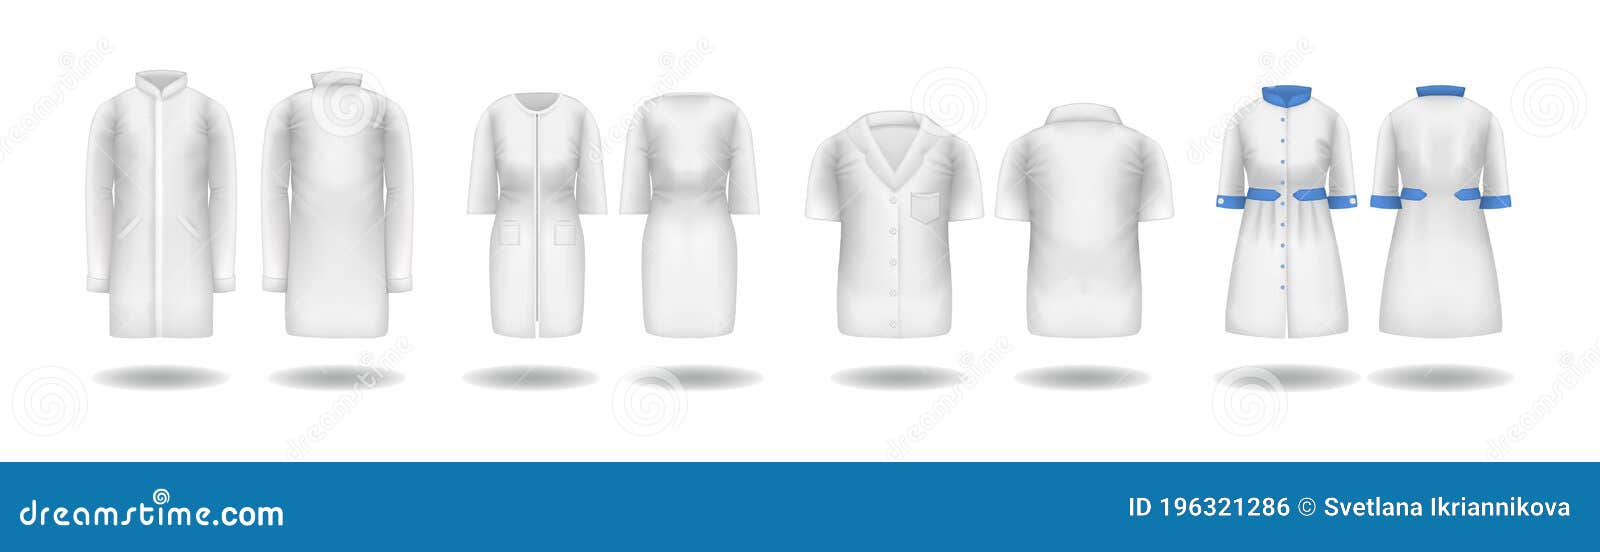 Download Realistic Doctor Coat Mock Up. Lab Uniform, Medical Clothes Stock Illustration - Illustration of ...